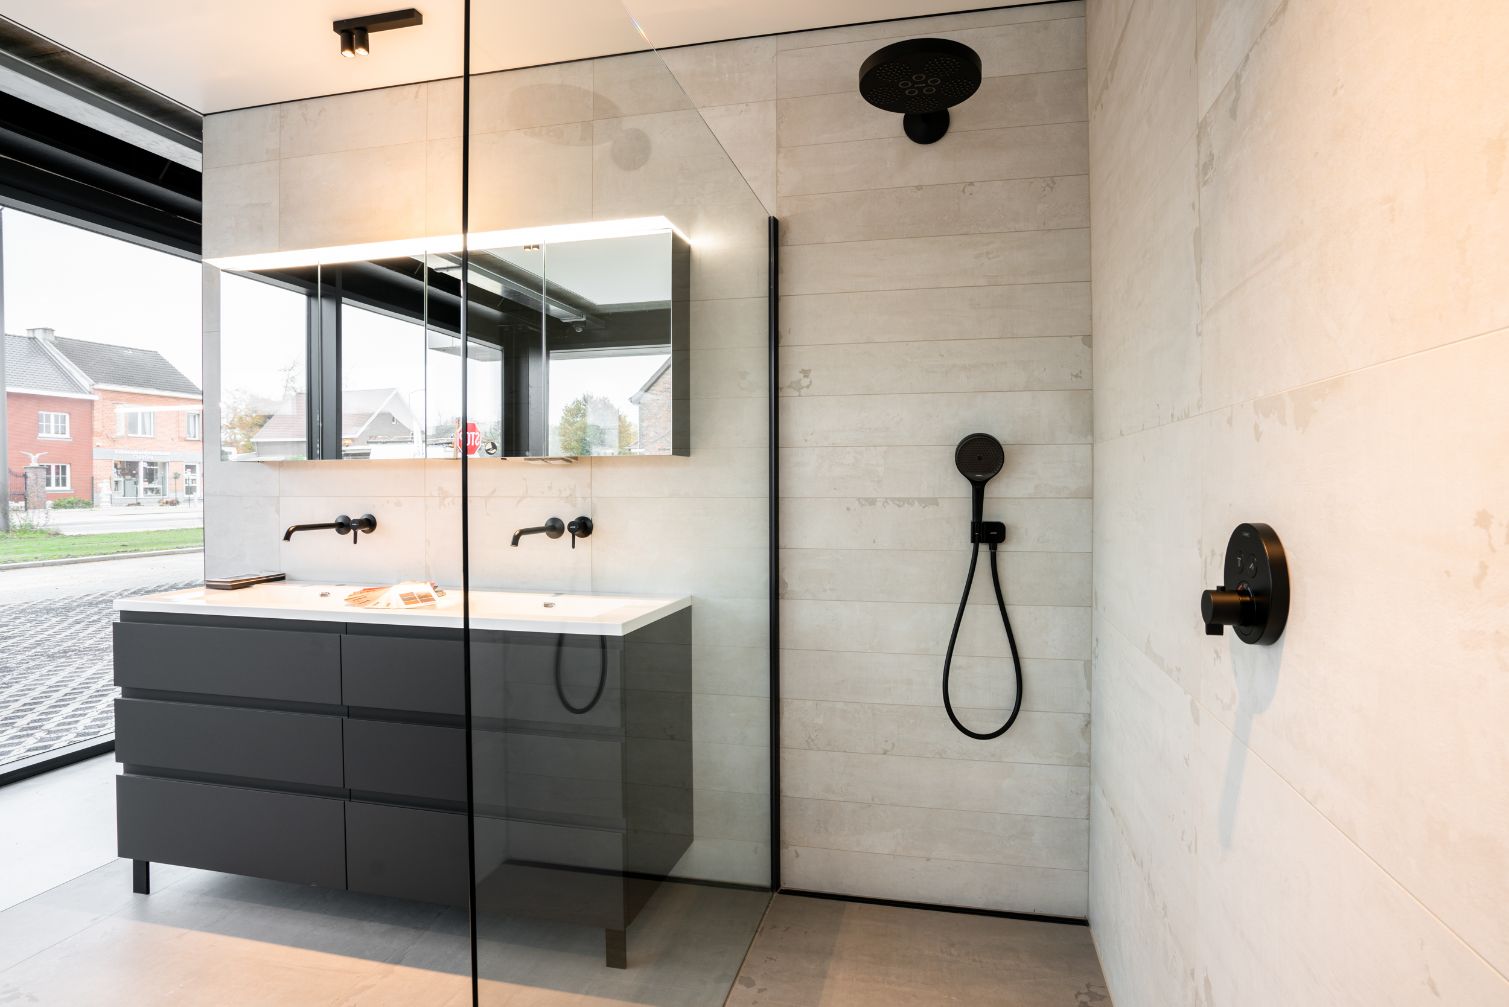 Badkamer in industriële stijl - badkamer renovatie